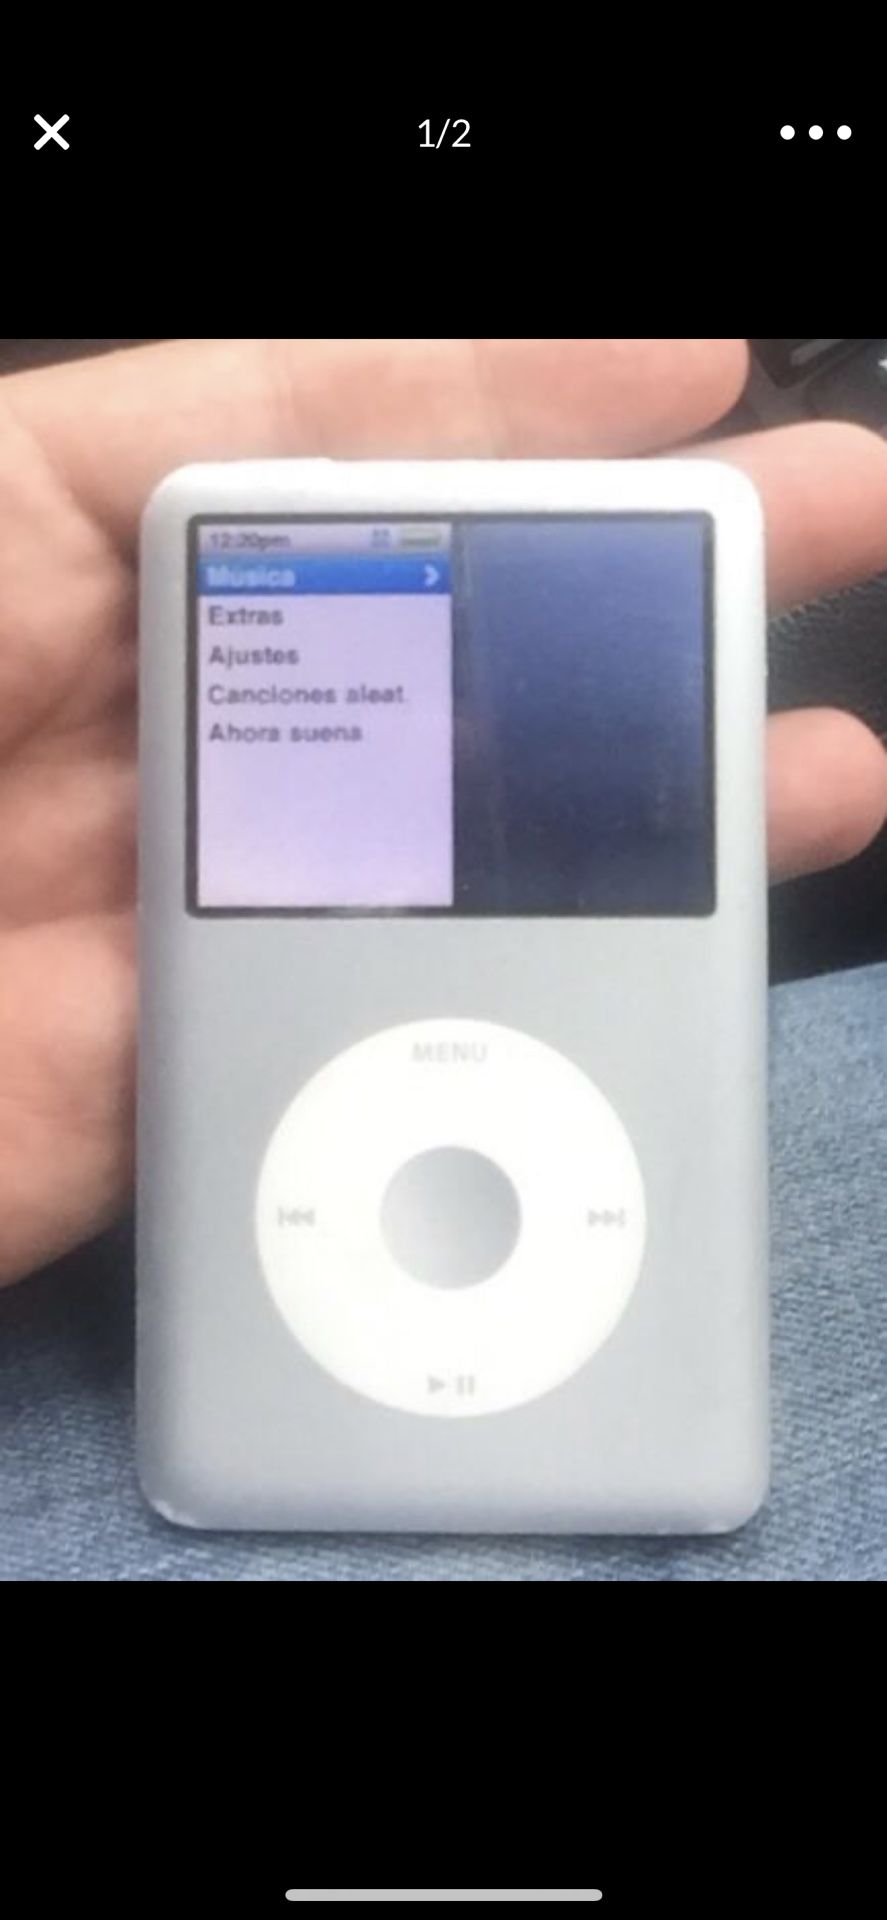 iPod classic 120g